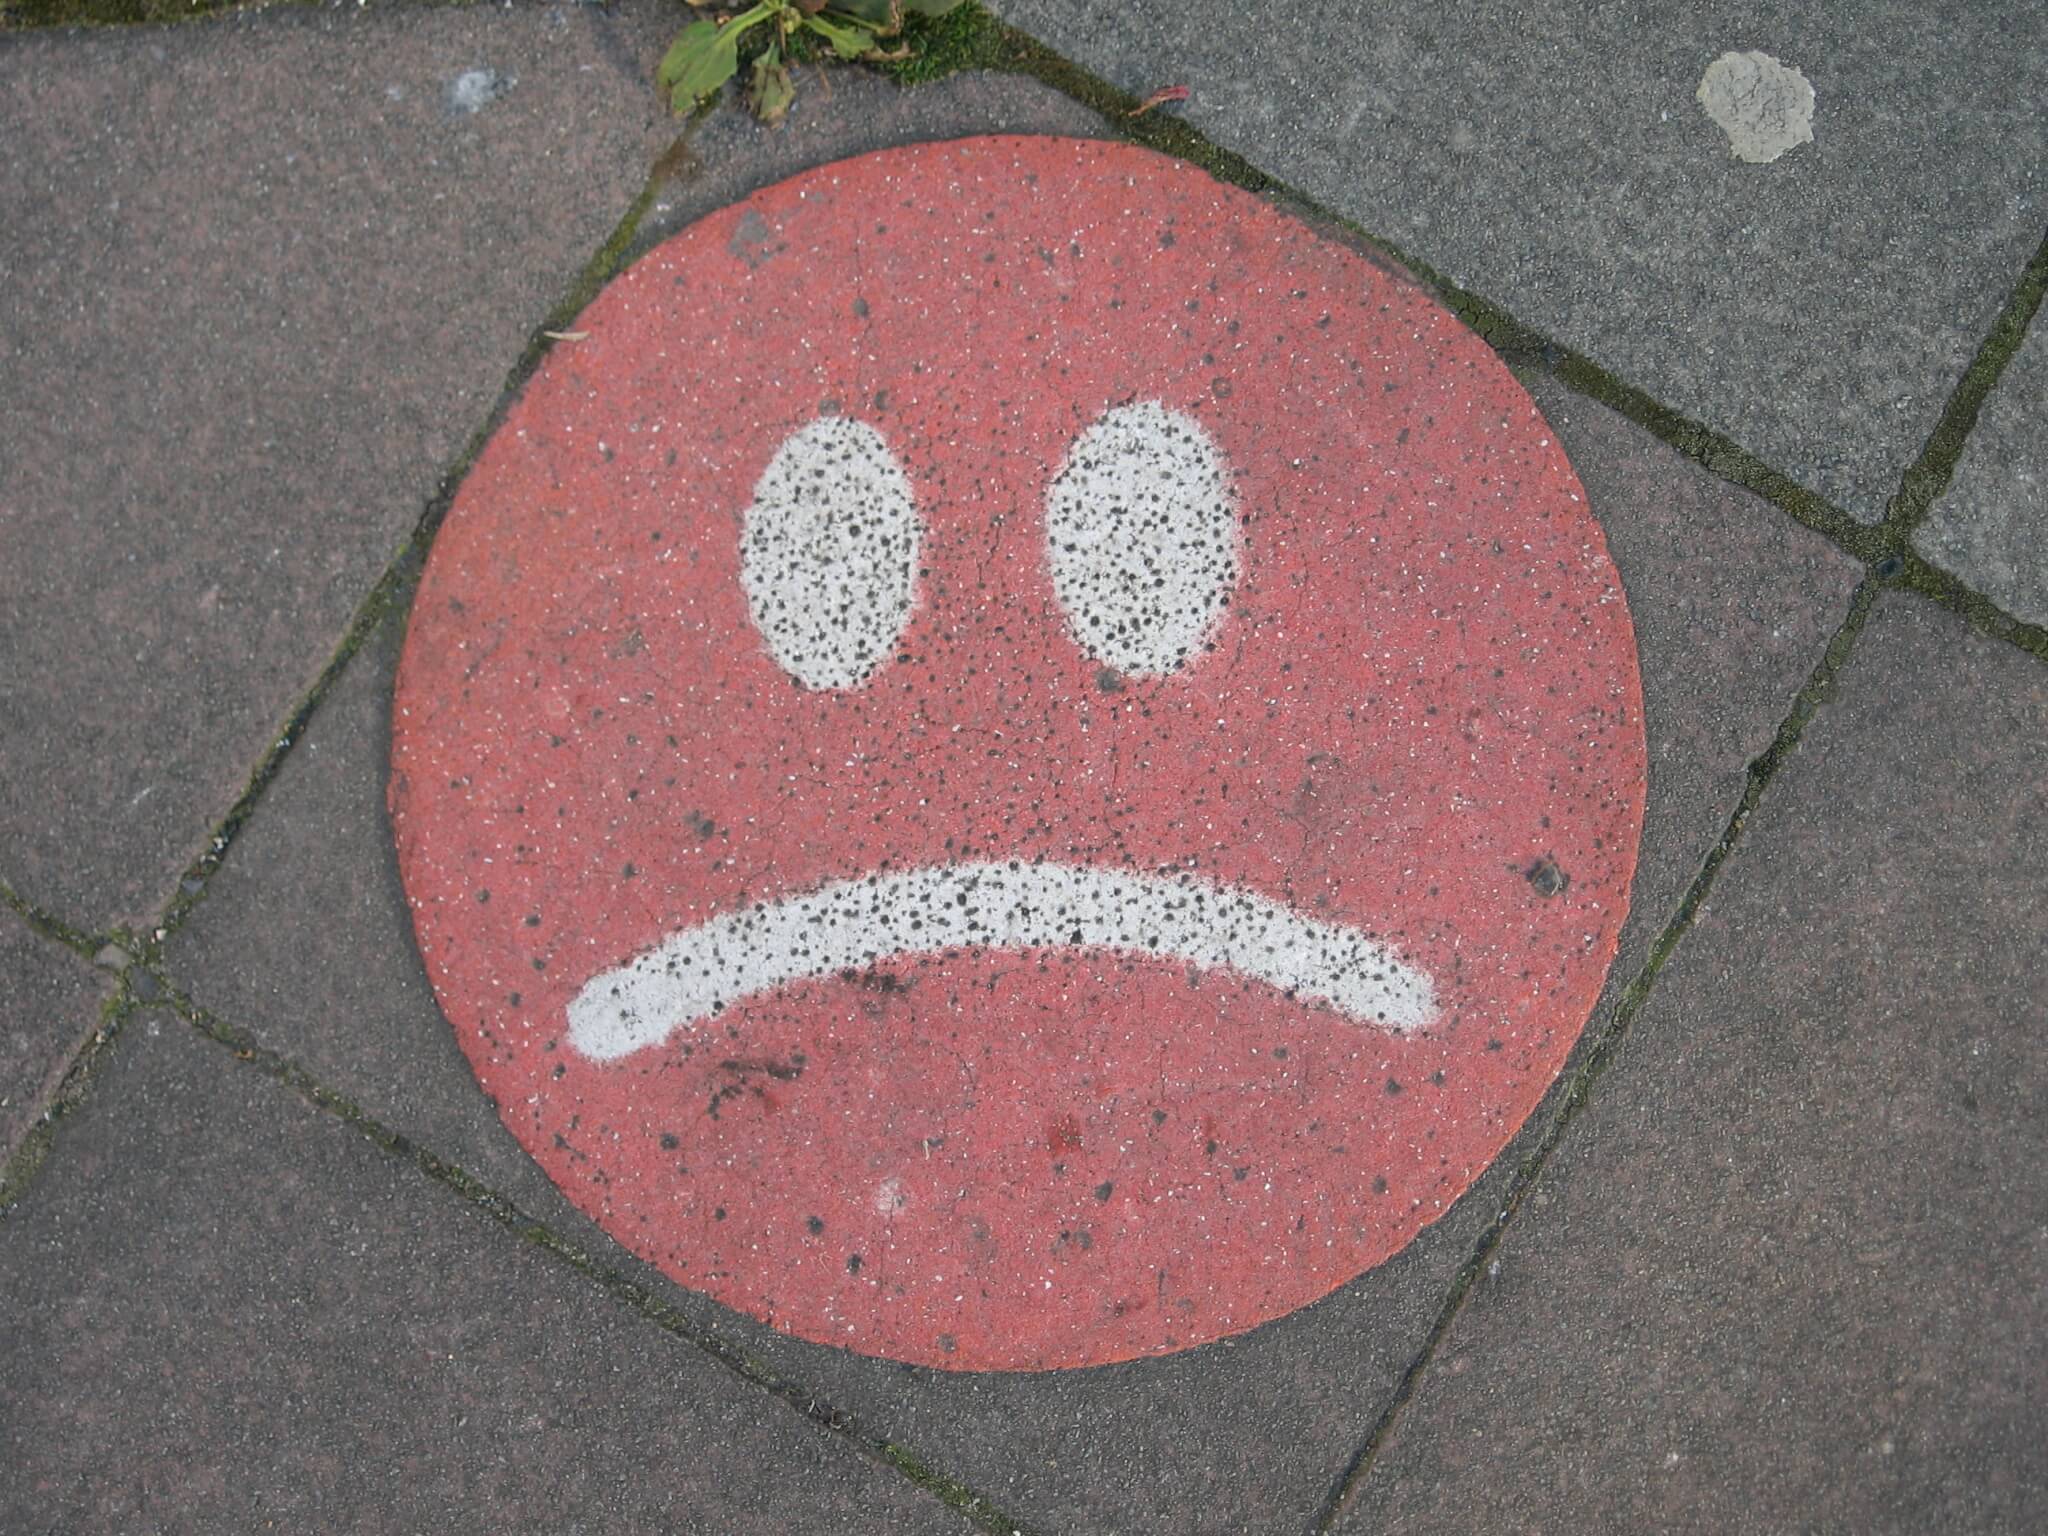 sad face on concrete